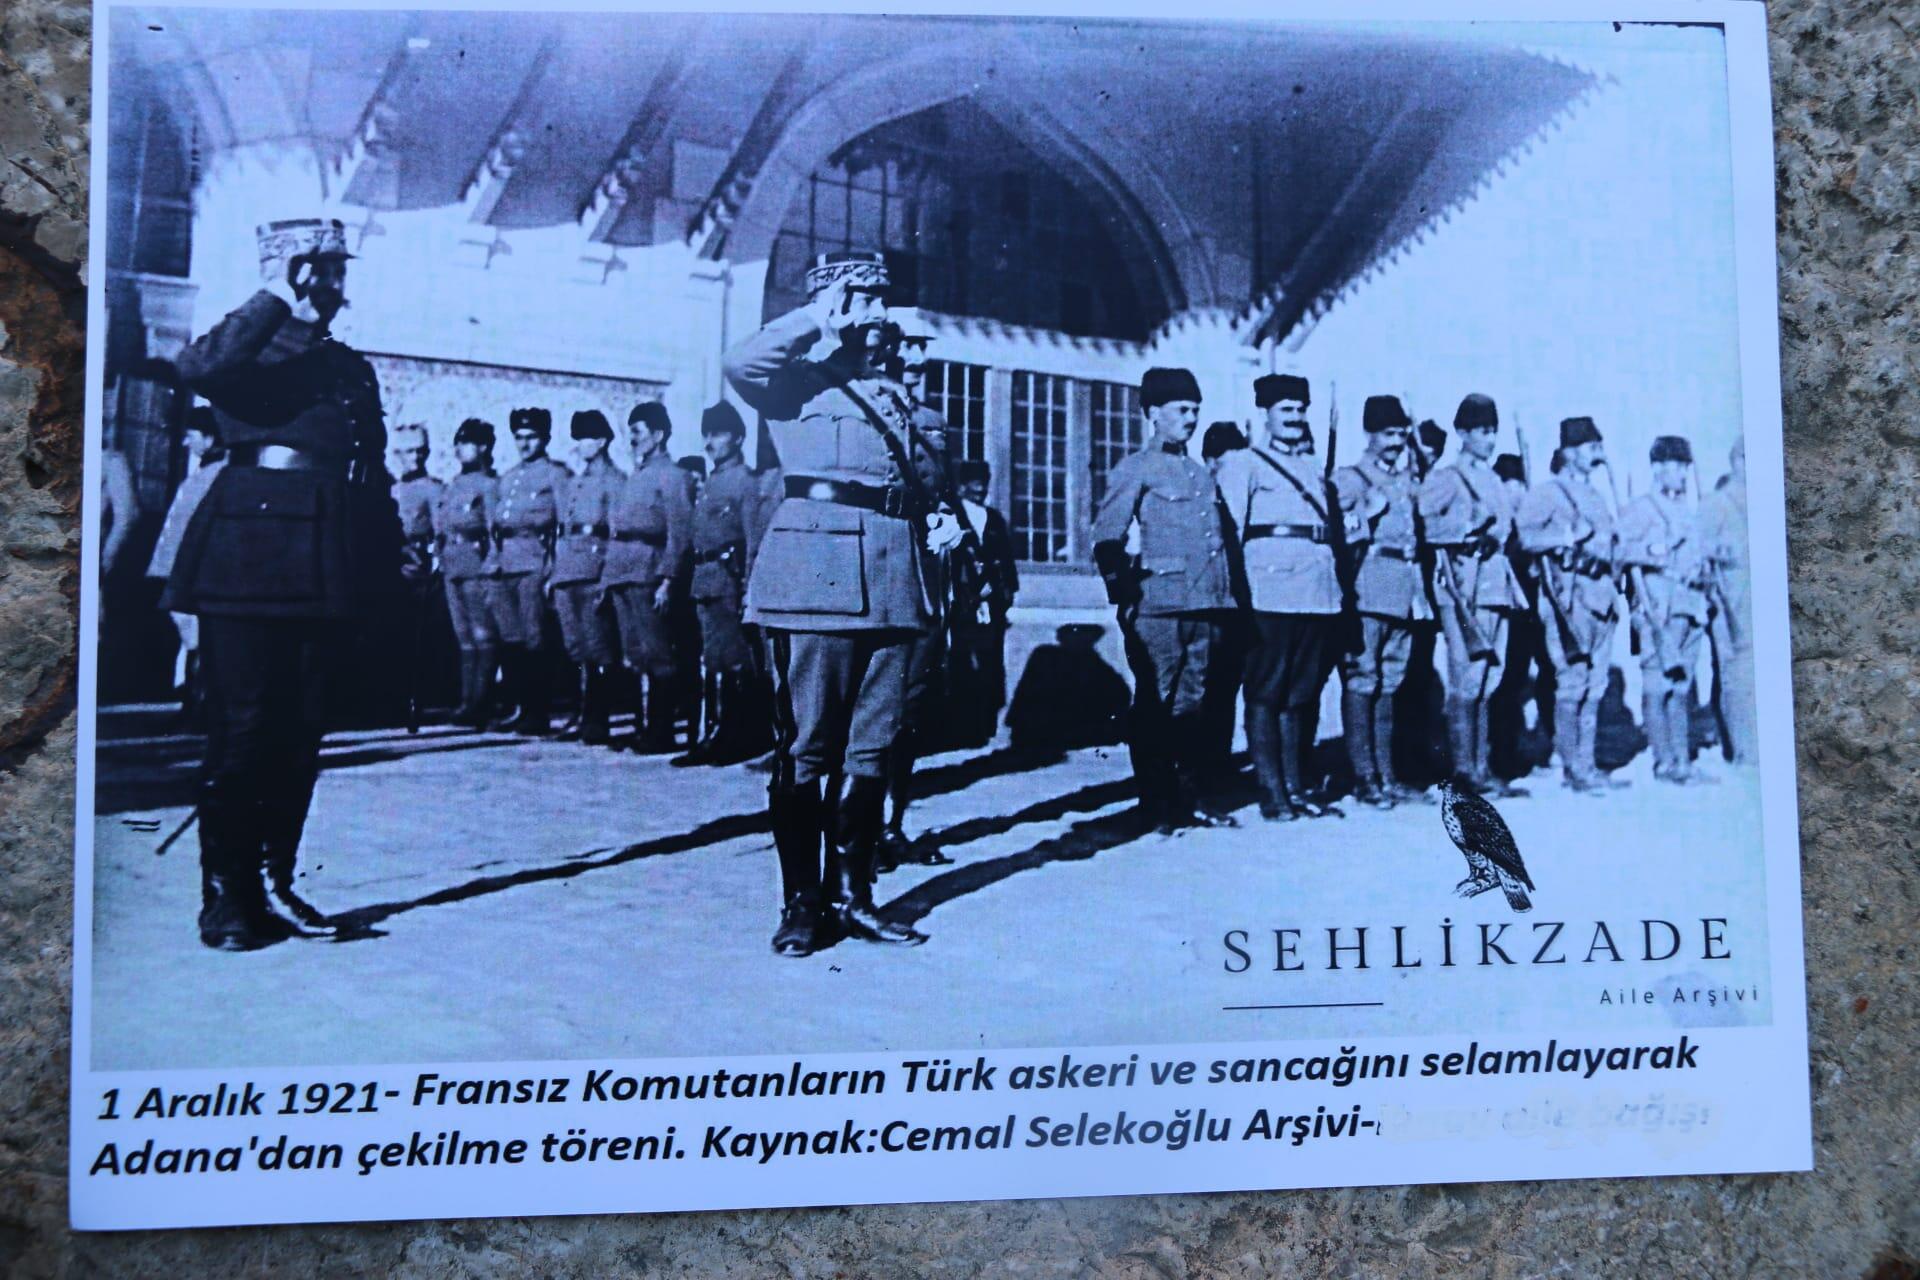 Fransız askerlerin Türk sancağını selamladığı fotoğrafı sergilediler